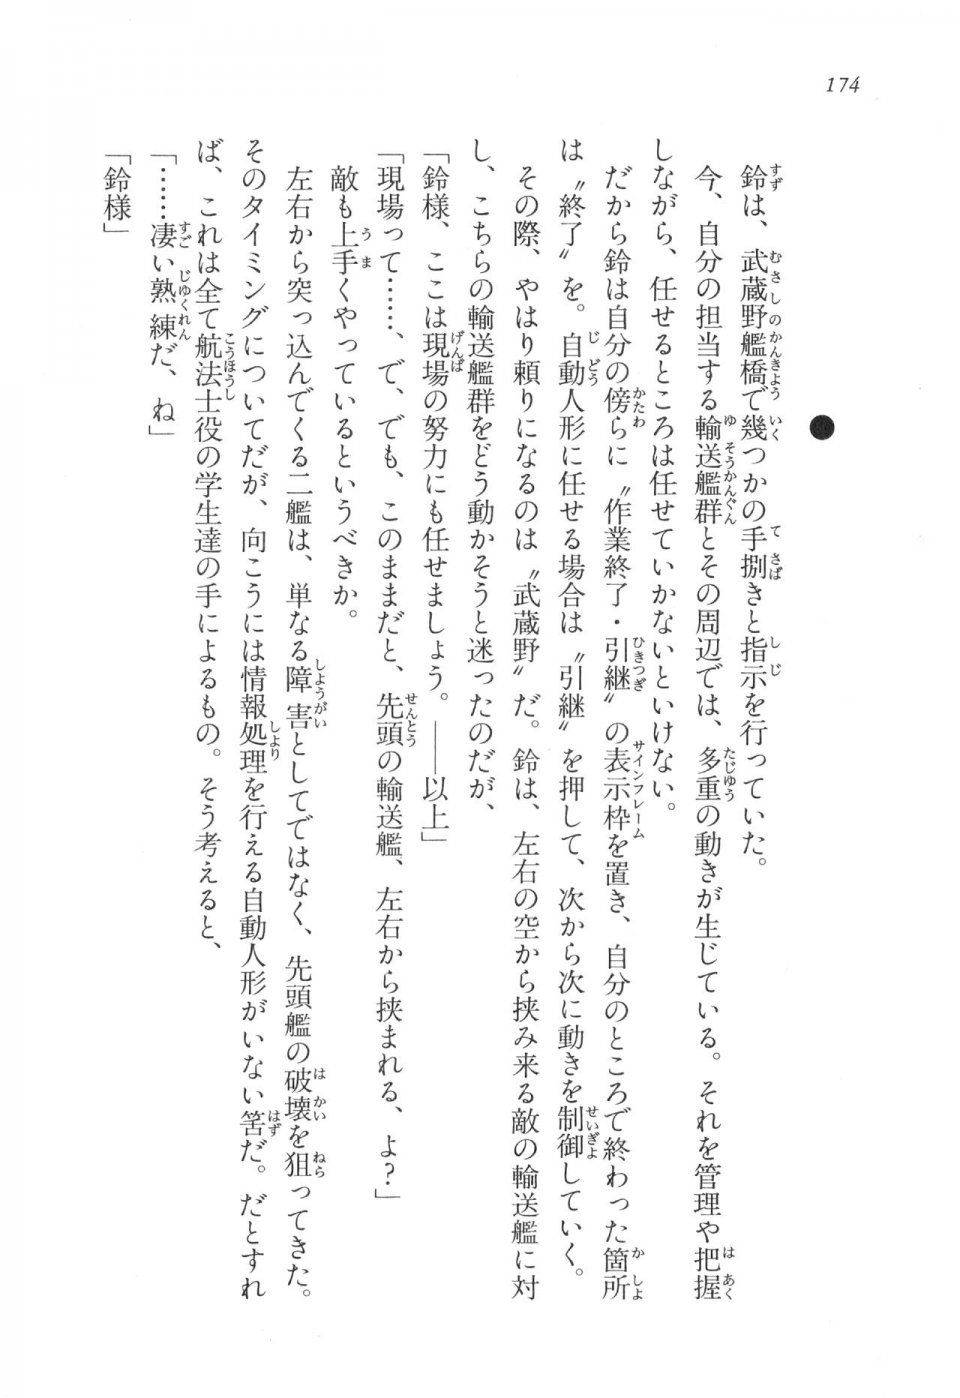 Kyoukai Senjou no Horizon LN Vol 17(7B) - Photo #174